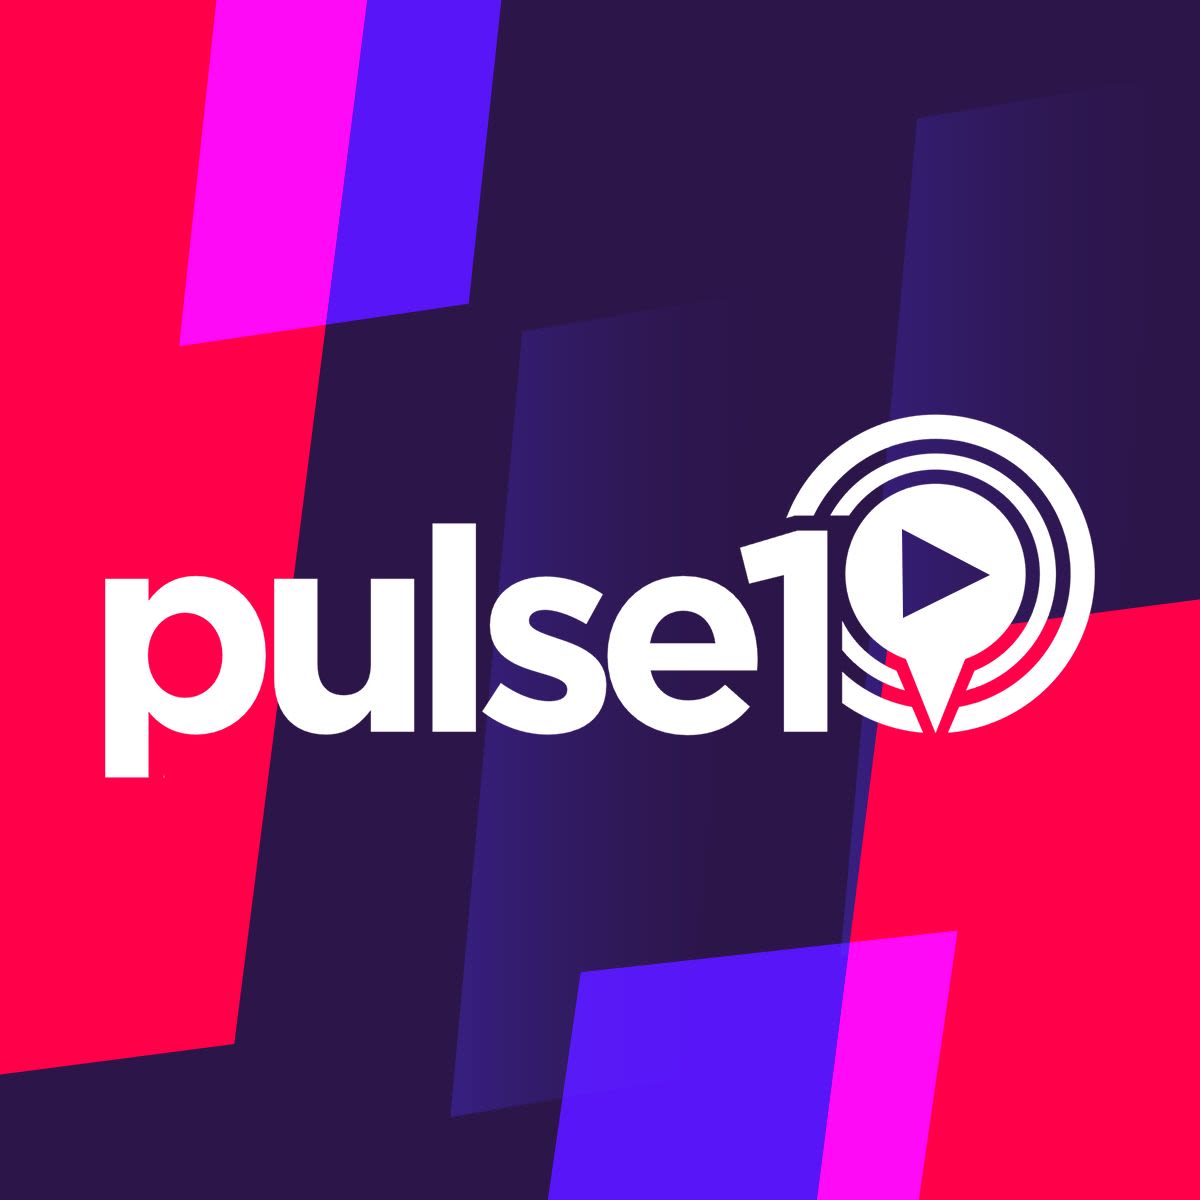 www.pulse1.co.uk